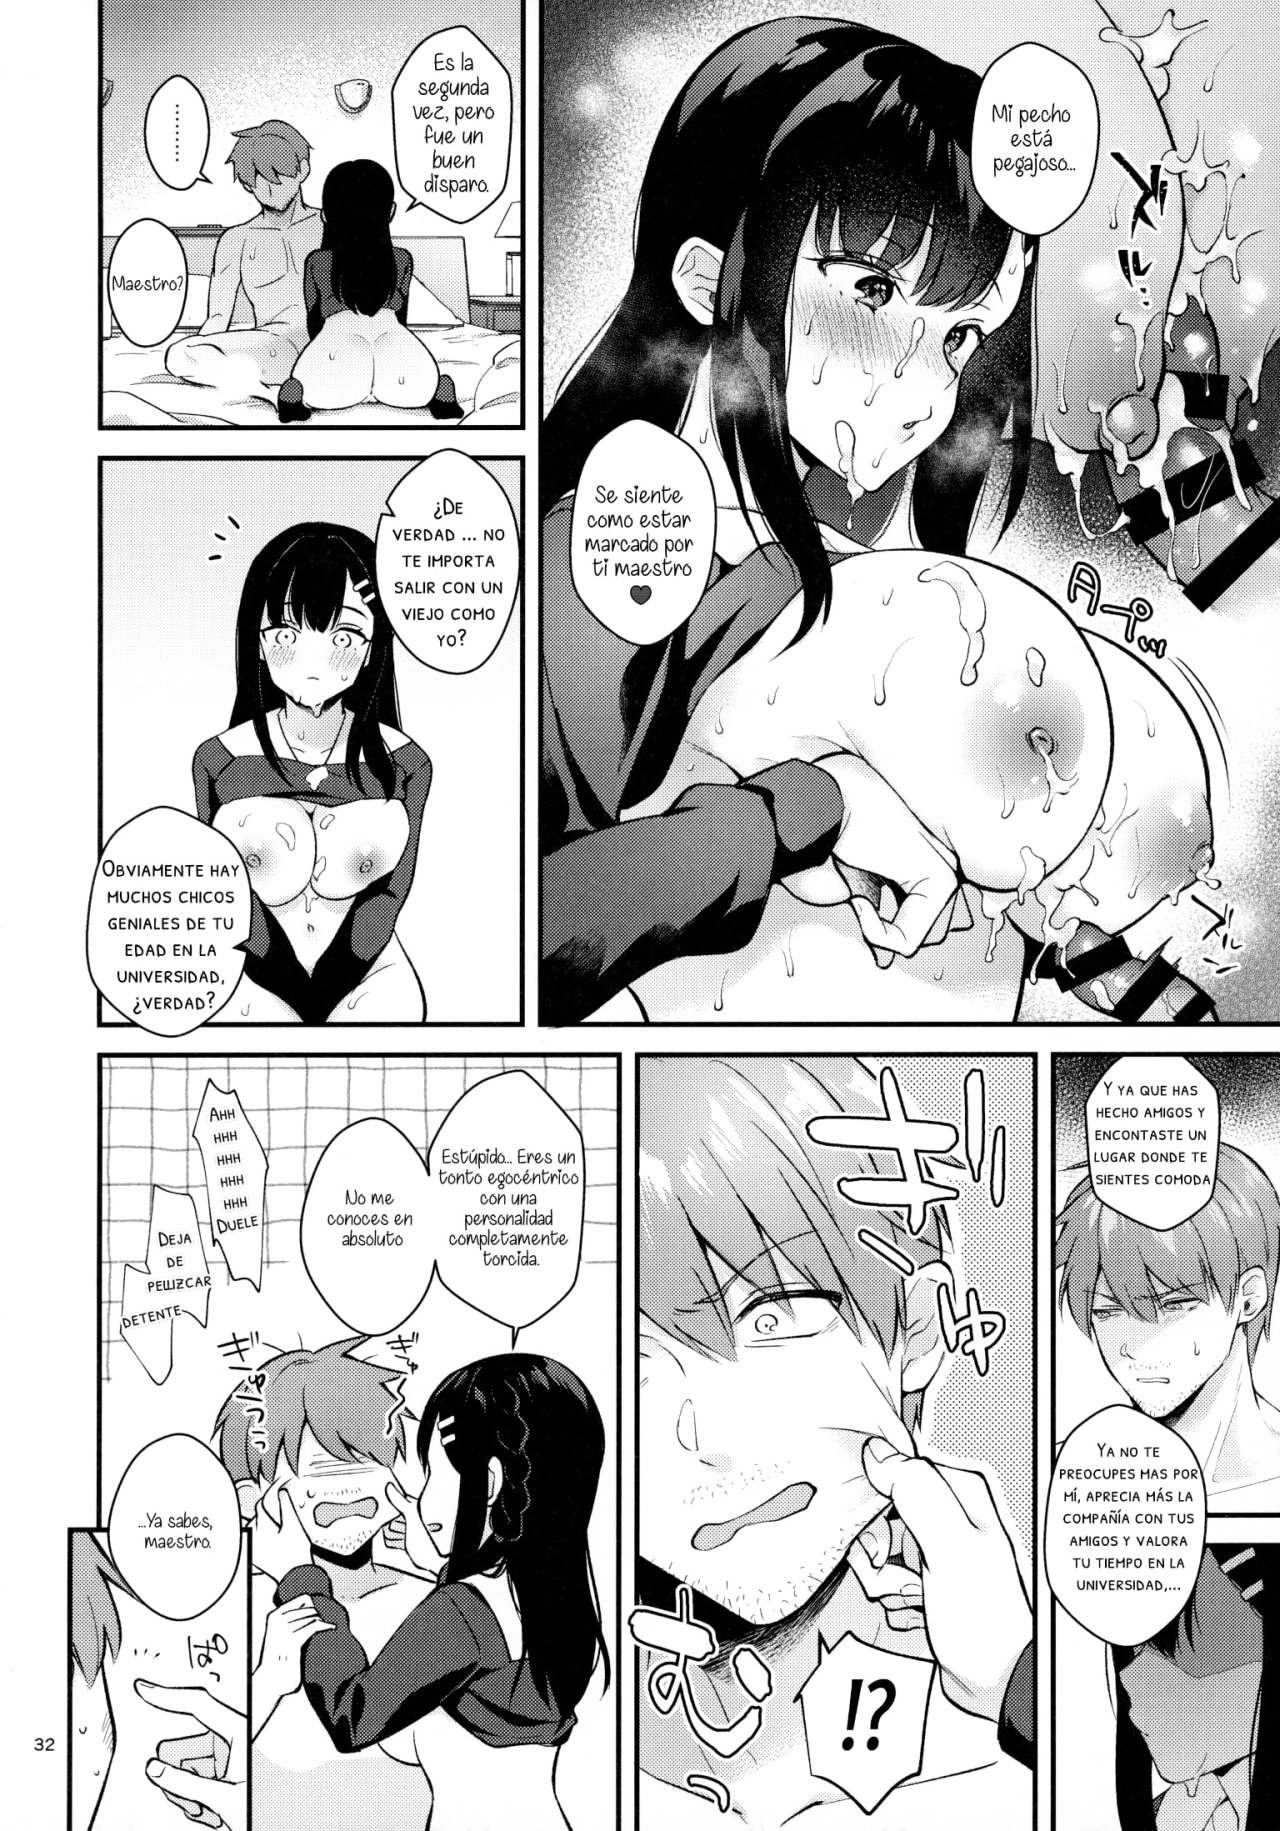 Sunshower-JK Miyako no Valentine Manga 3 - 30